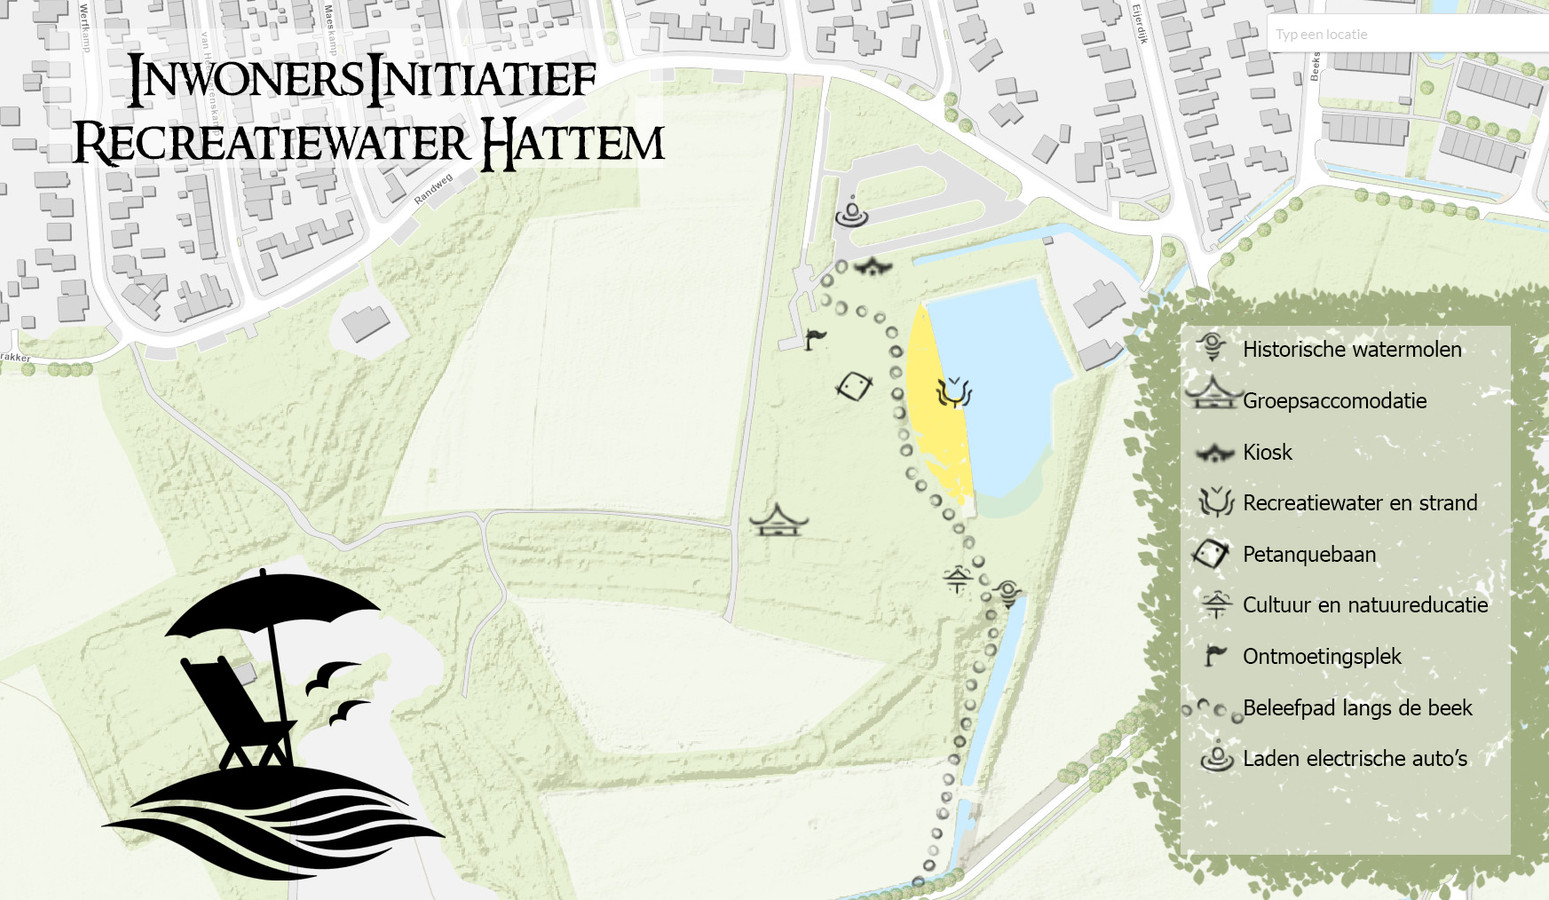 Het Inwonersinitiatief Recreatiewater Hattem heeft al een plan, maar dat moet op alle fronten nog wel concreet worden uitgewerkt.